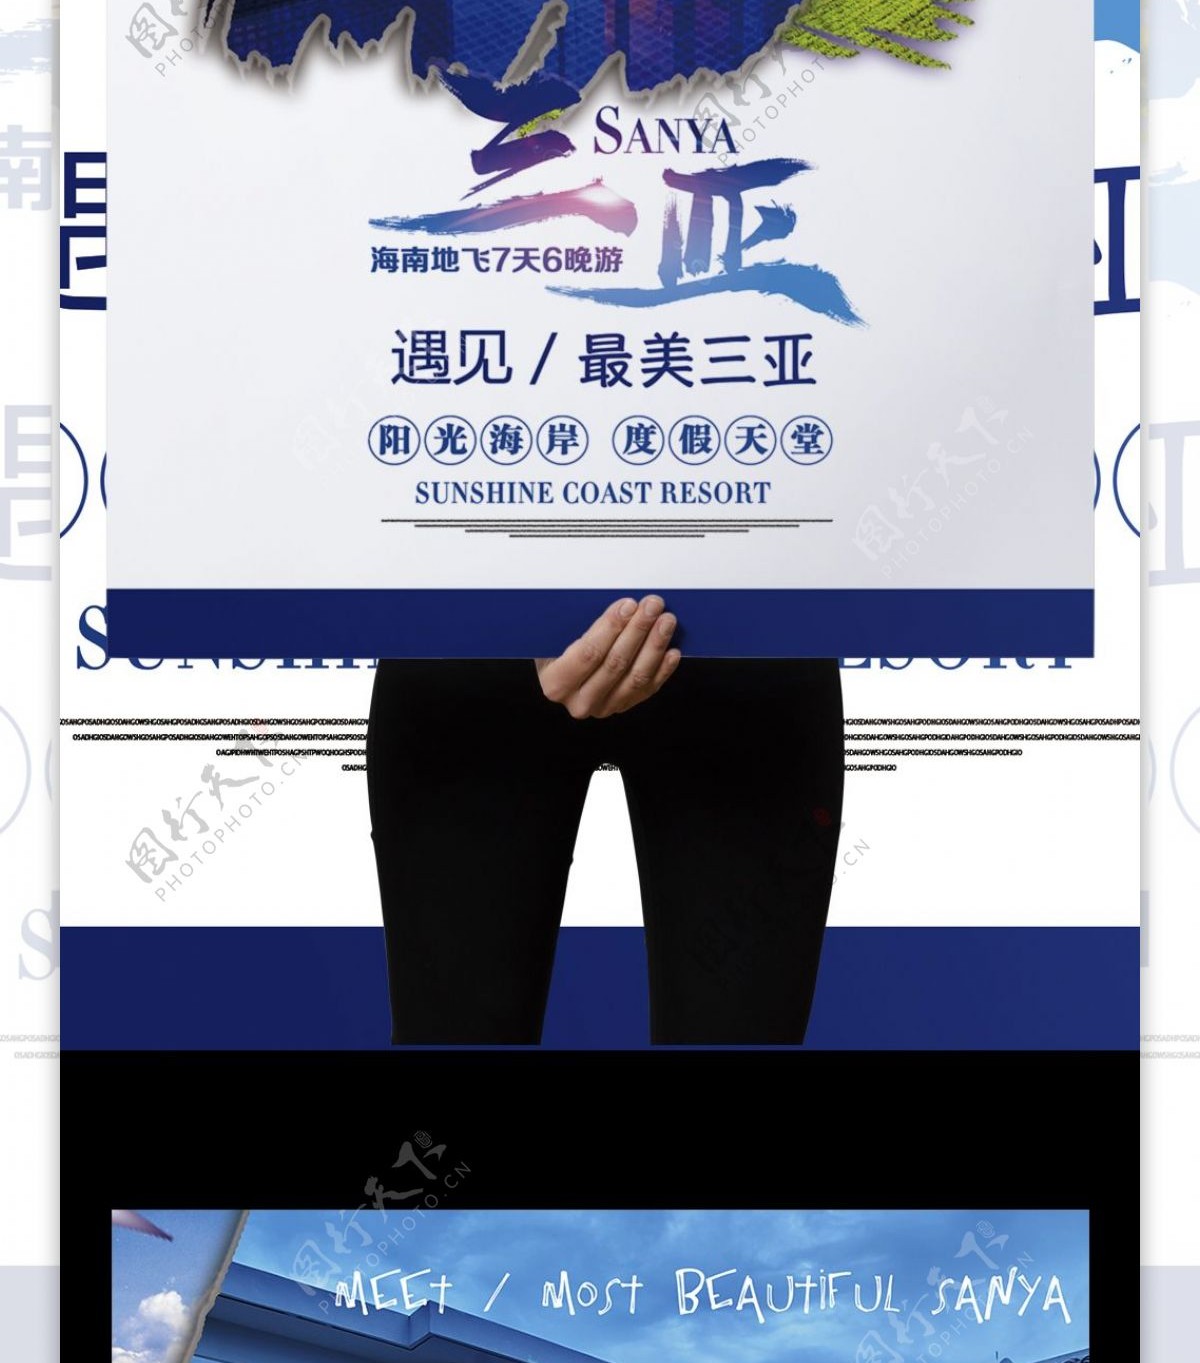 2017浪漫蓝色三亚旅游海报设海南三亚旅游海报设计